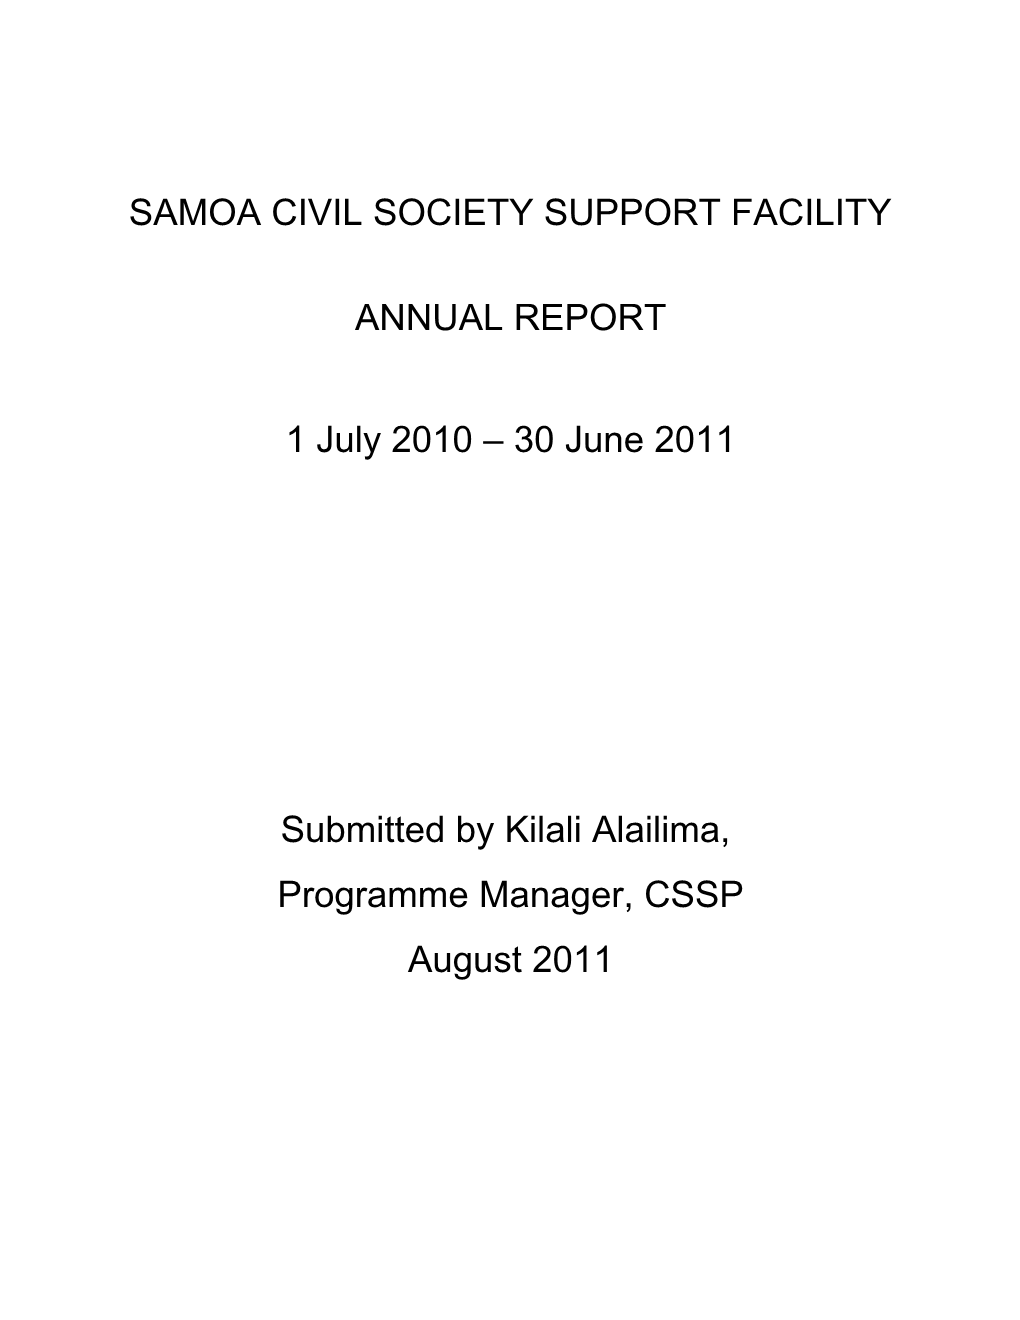 Samoa Civil Society Support Facility Annual Report